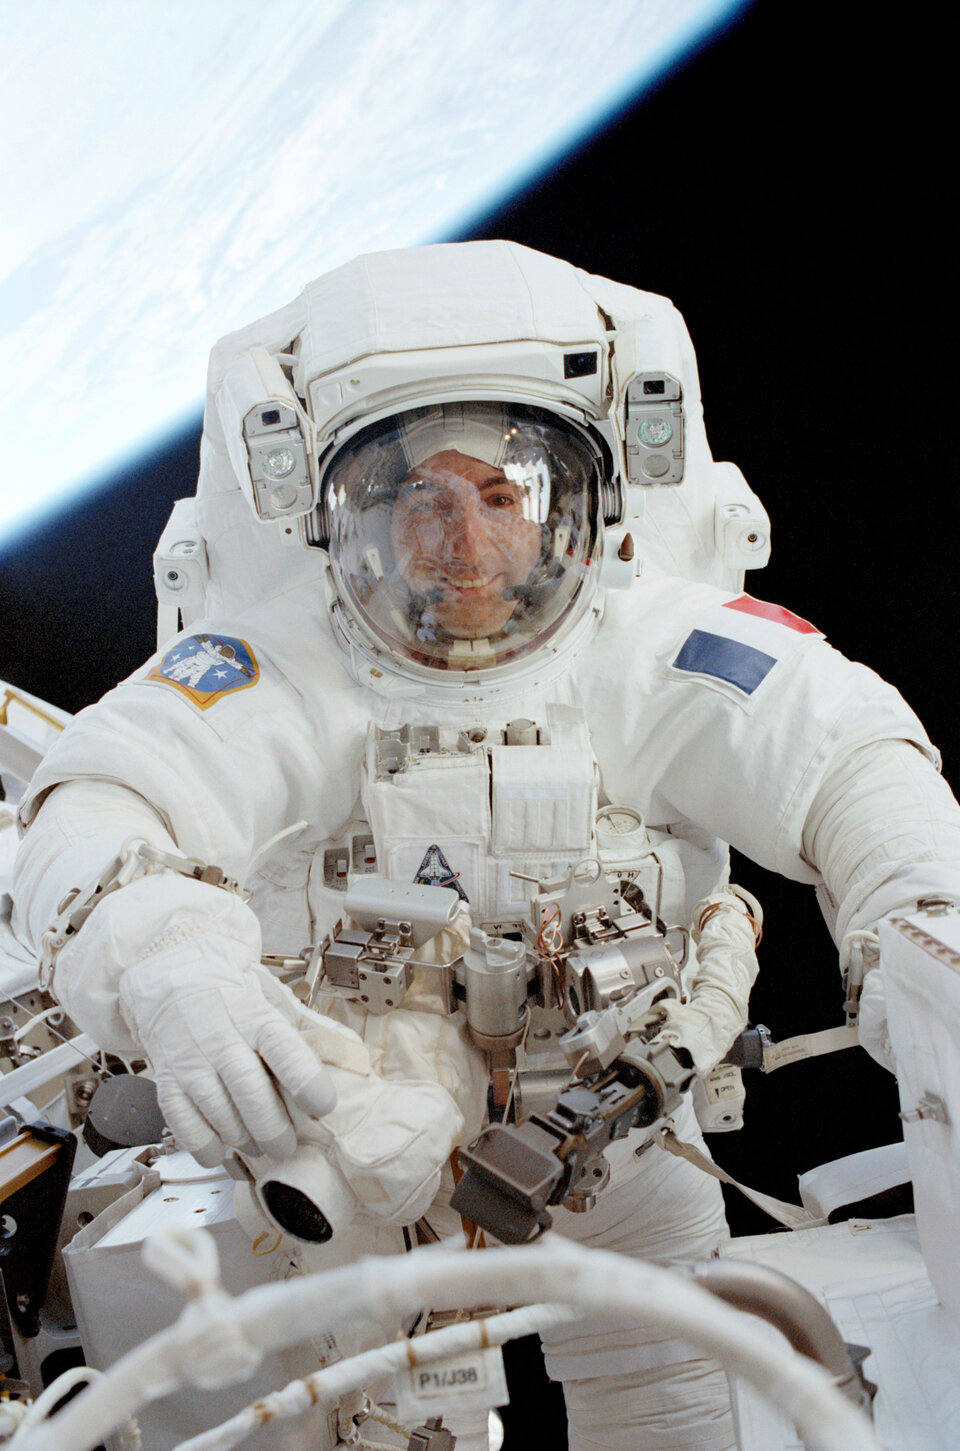 Le 3 août à 15h55 (heure de Paris), l’astronaute de l’ESA Thomas Reiter sortira de la Station spatiale internationale